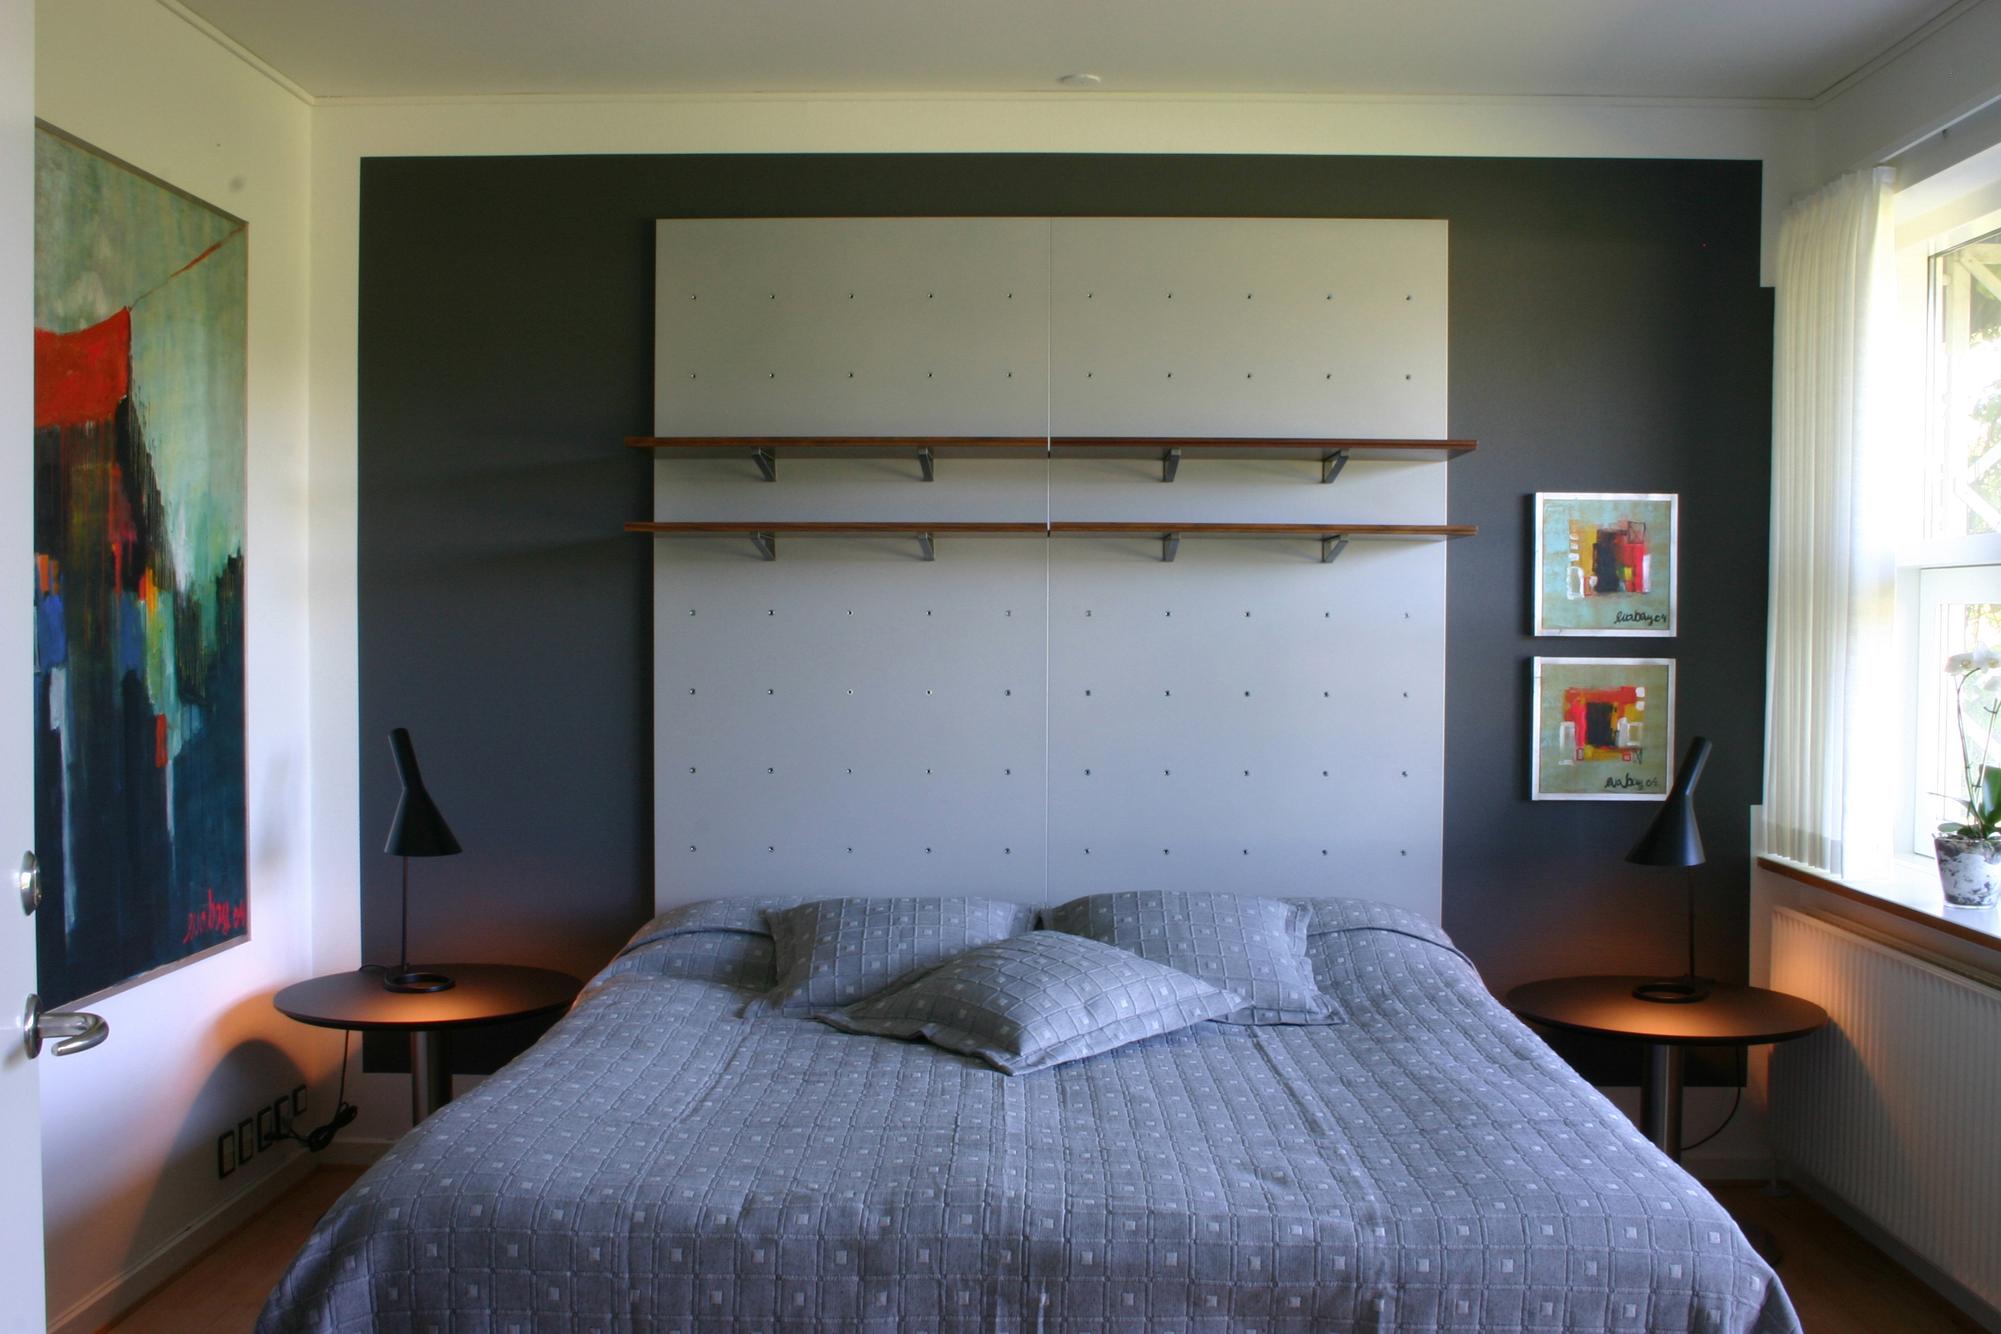 Schlafzimmer in beruhigenden Grautönen #bett #regal #tagesdecke #nachttisch #zimmergestaltung ©Onecollection